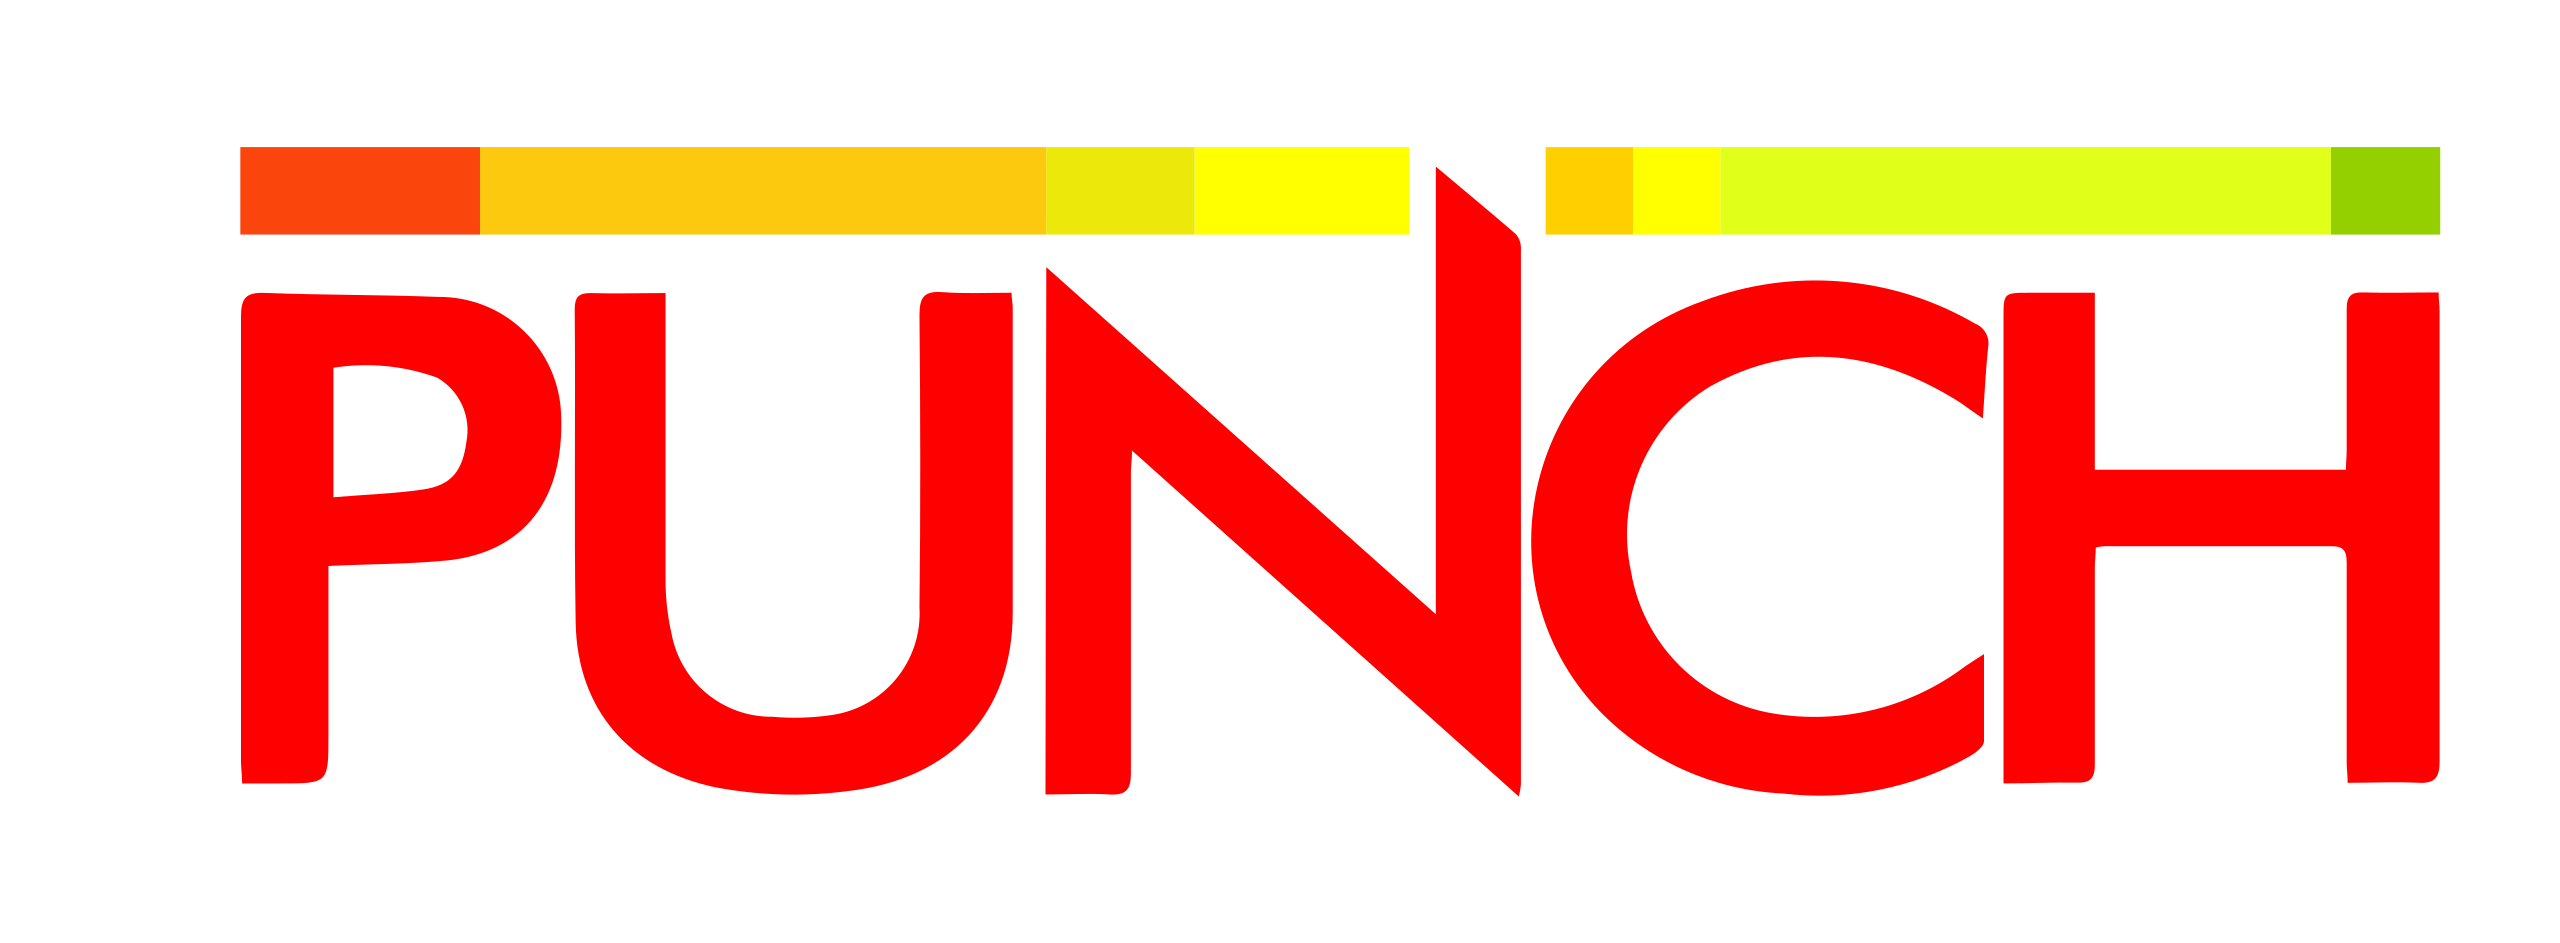 Punch_logo.svg